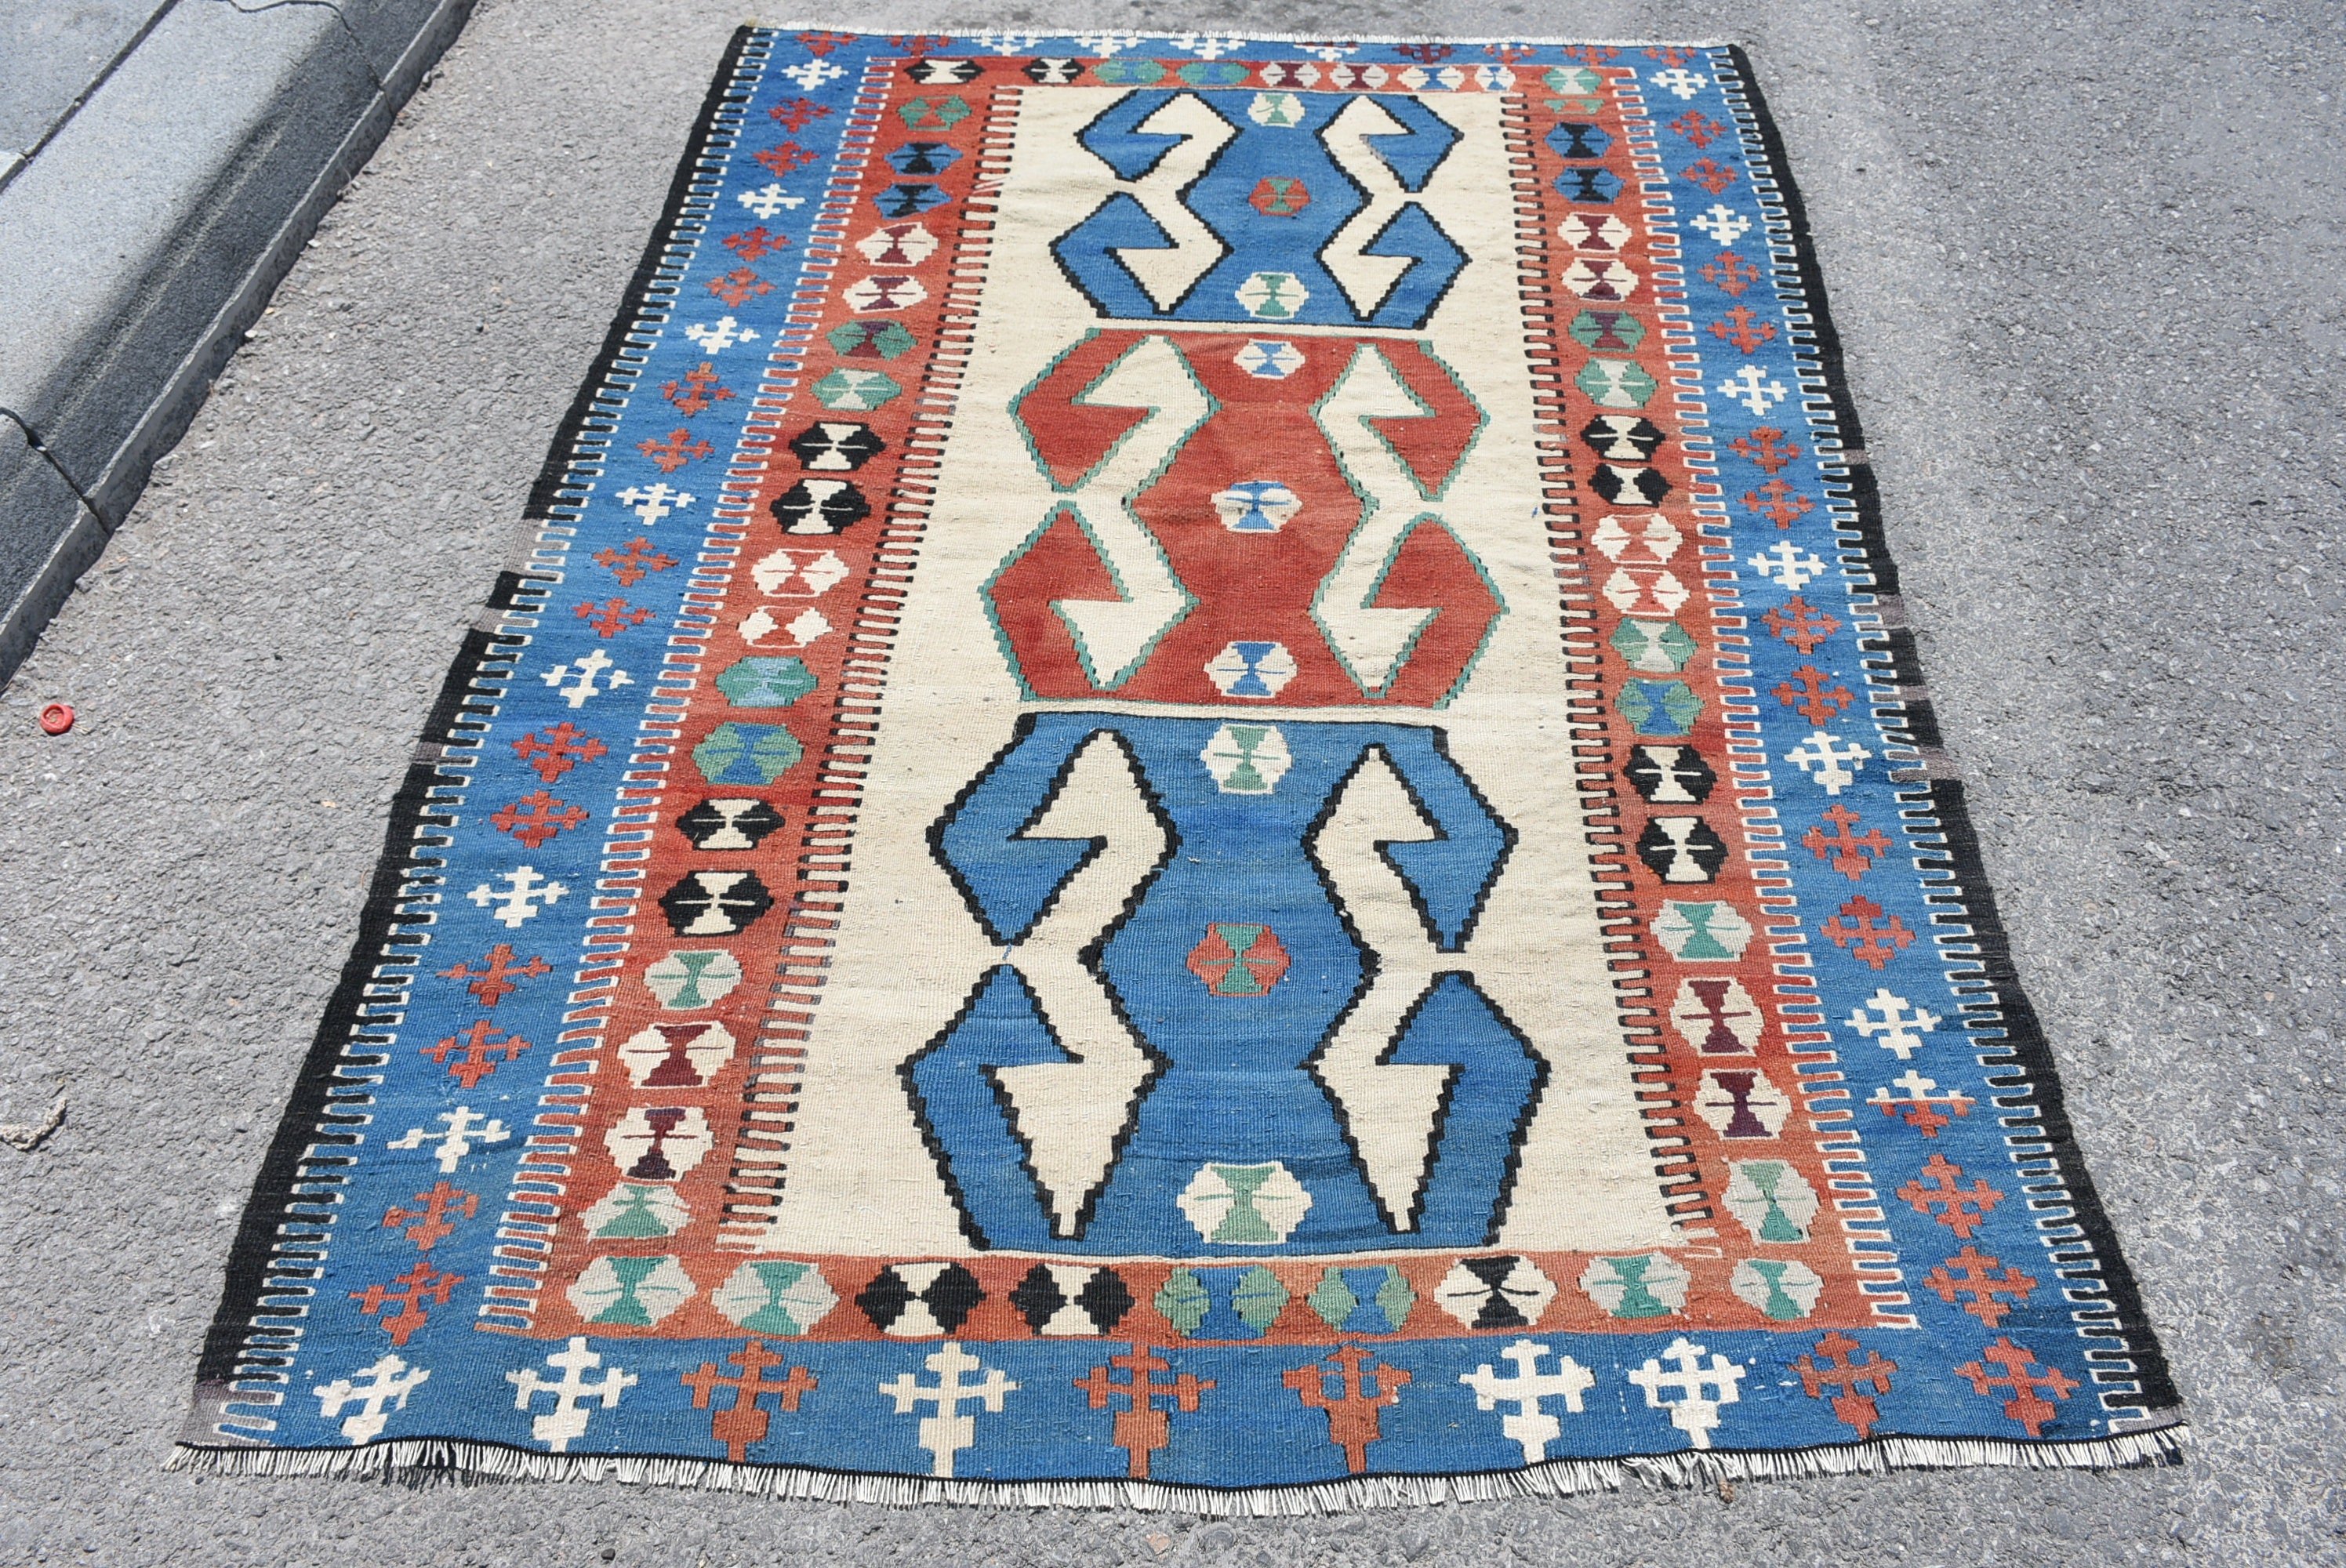 Floor Rugs, Blue Oushak Rug, Rugs for Nursery, Dining Room Rug, Vintage Rugs, Anatolian Rug, Turkish Rugs, 4.6x6.3 ft Area Rug, Kilim